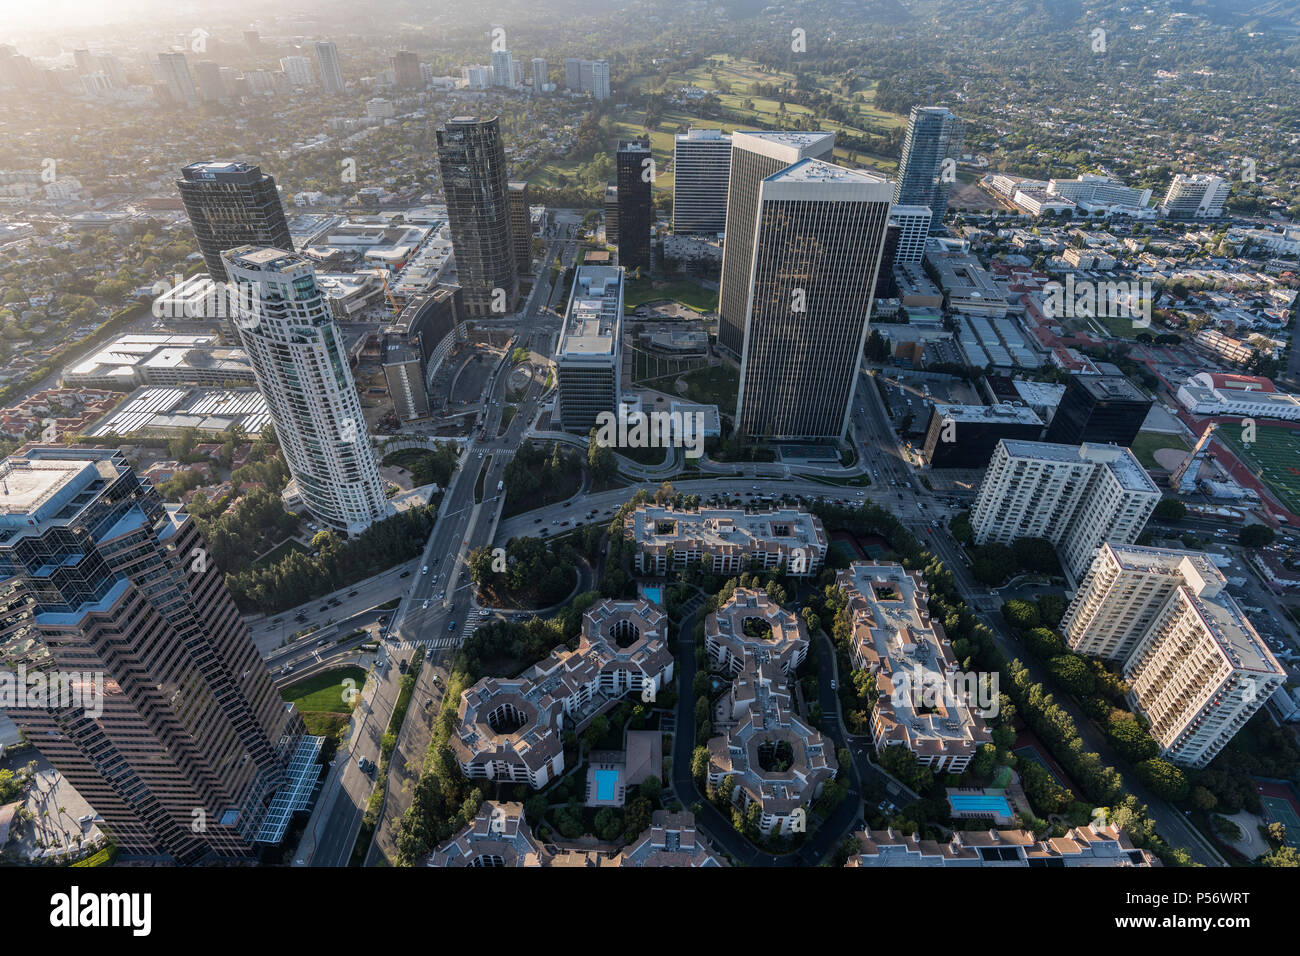 Los Angeles, Californie, USA - 18 Avril 2018 : Vue aérienne de Century City tours de bureaux, immeubles d'appartements et condos. Banque D'Images